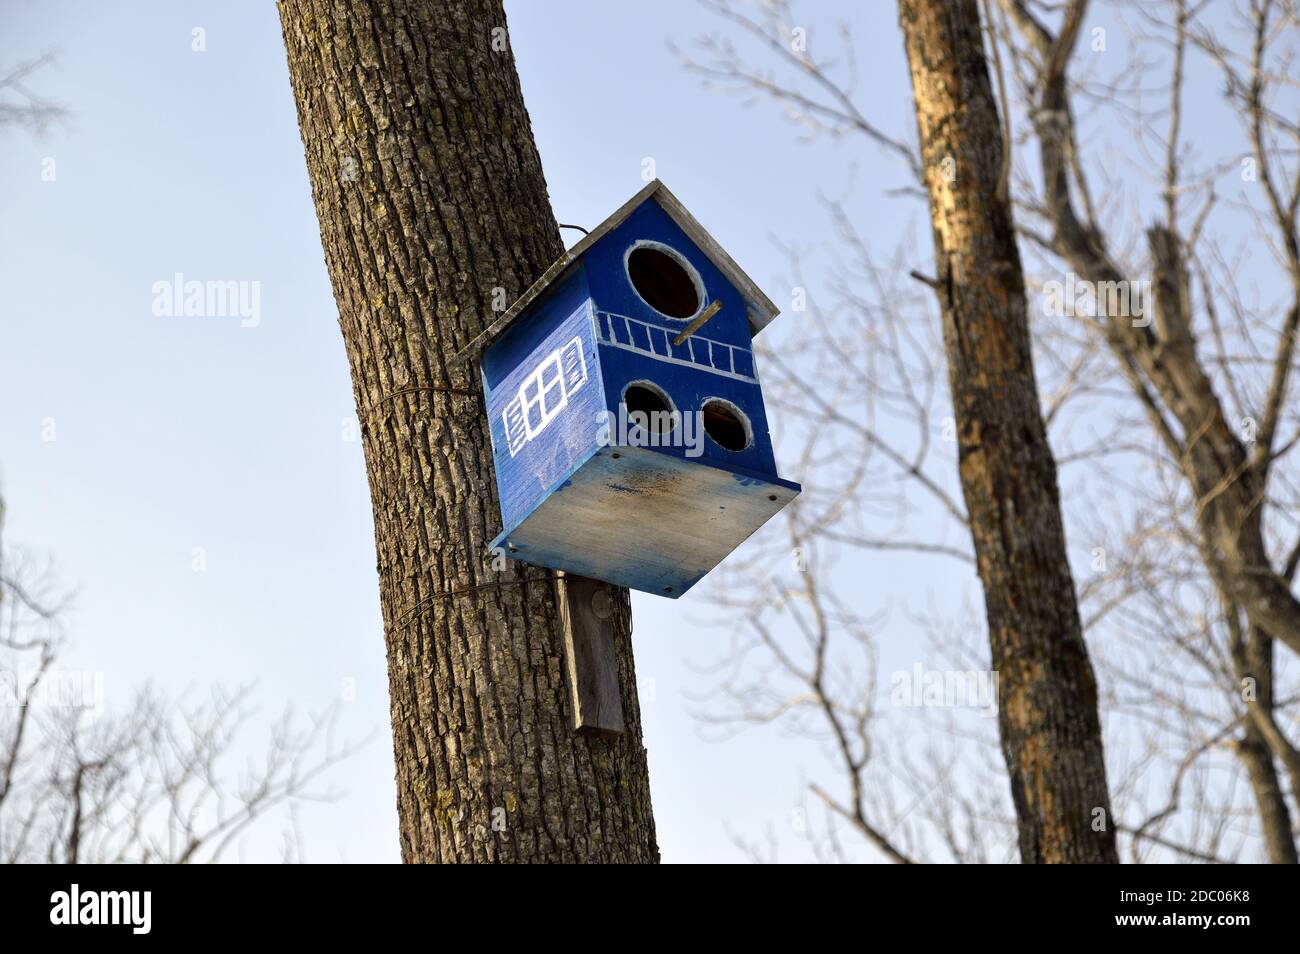 Birdhouse in legno con finestre dipinte e tre fori. Appeso sull'albero in foresta su sfondo cielo. Inizio primavera, Russia Foto Stock